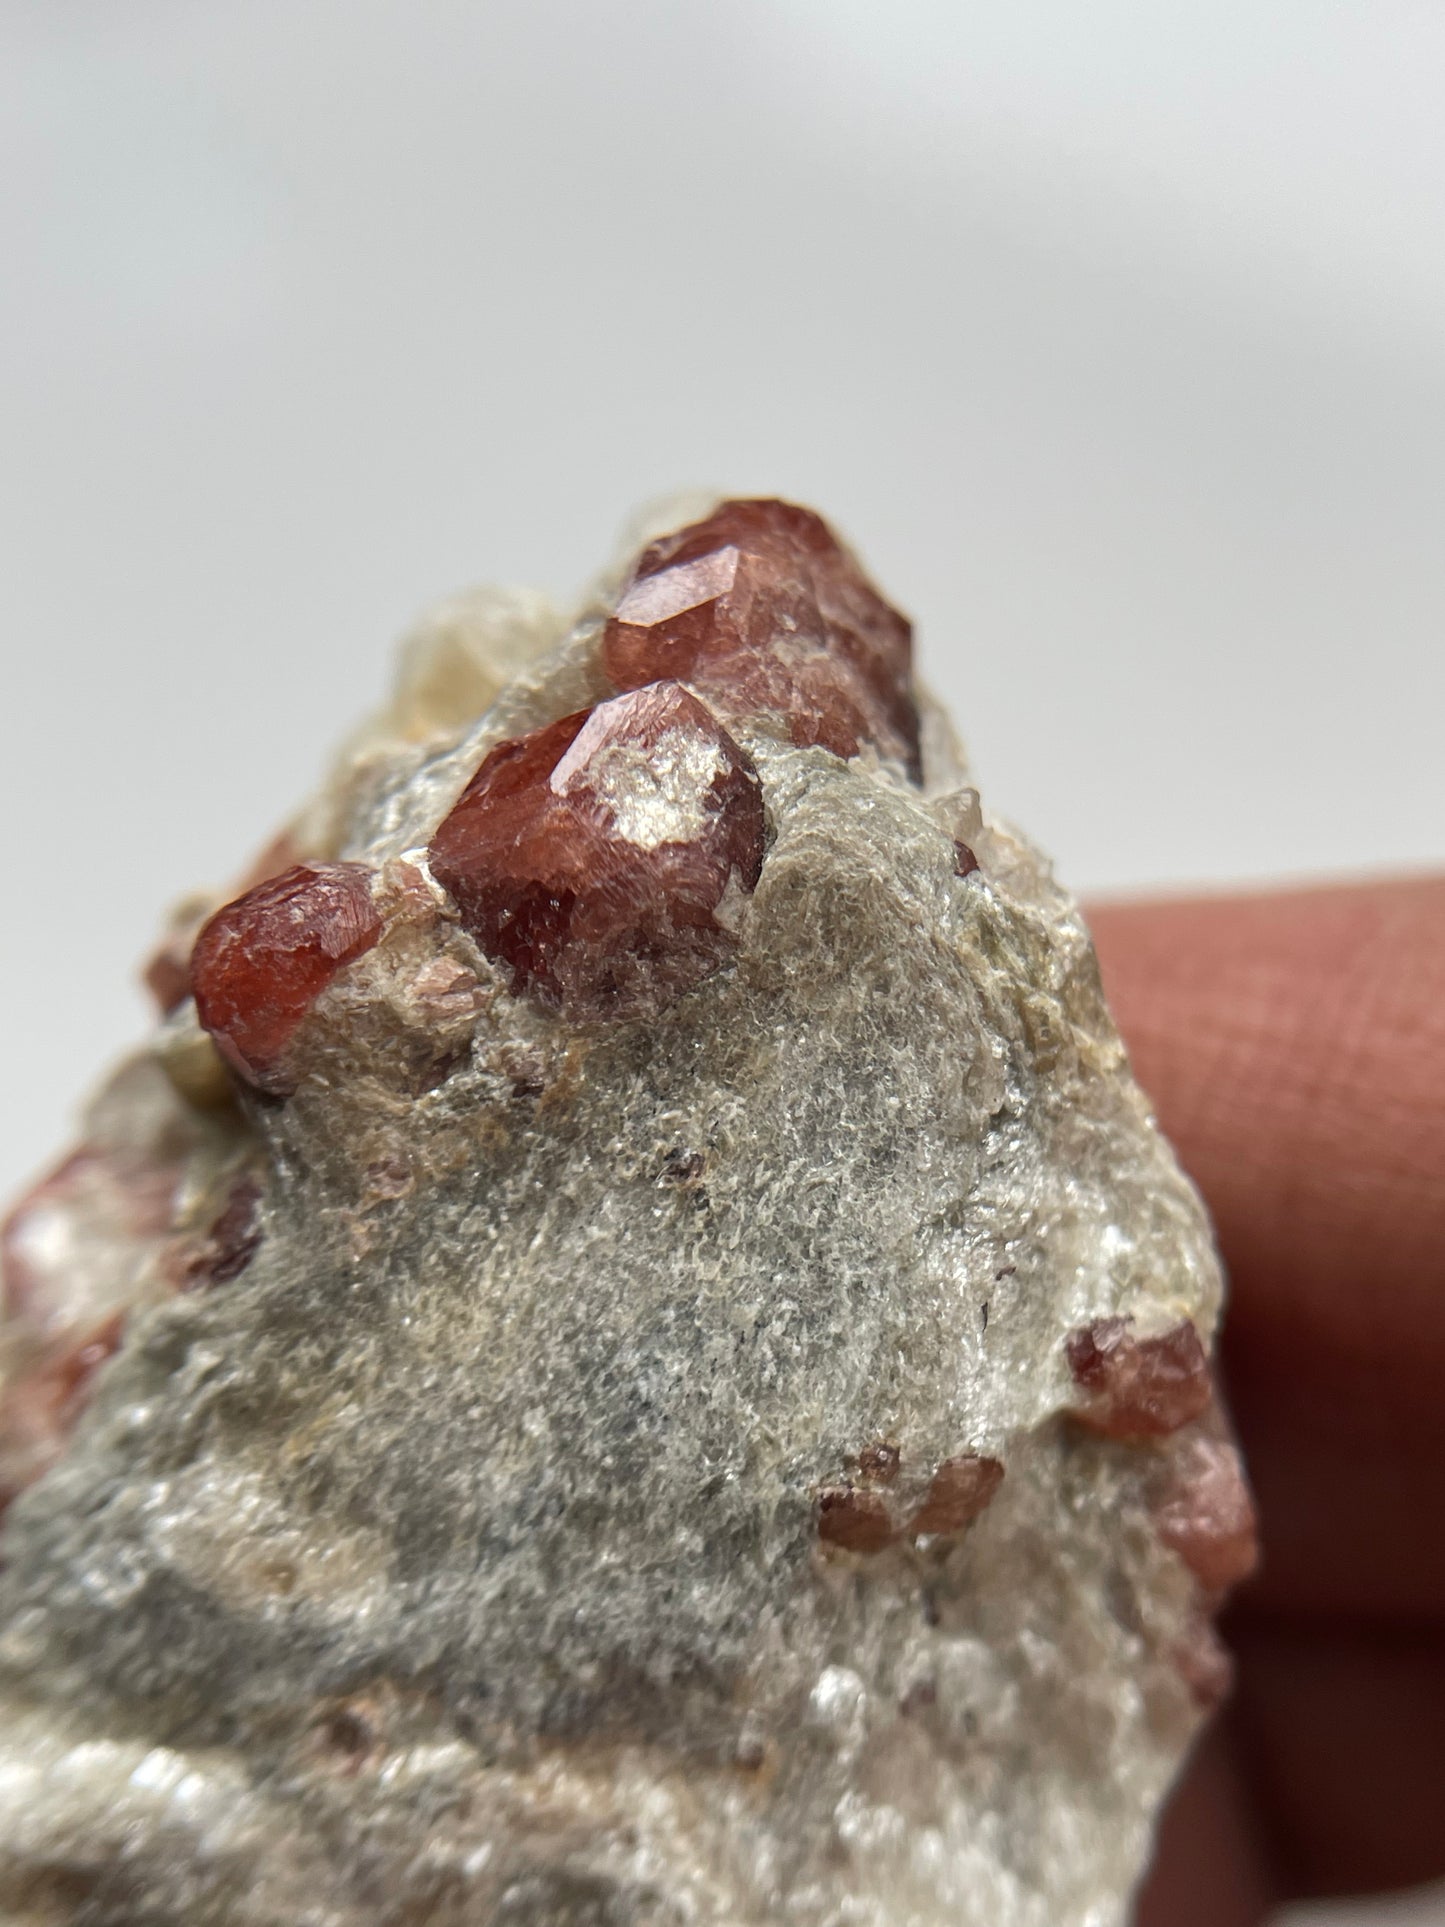 Spessertite Garnet In Schist Crystal Gemstone Rough Specimen (2)